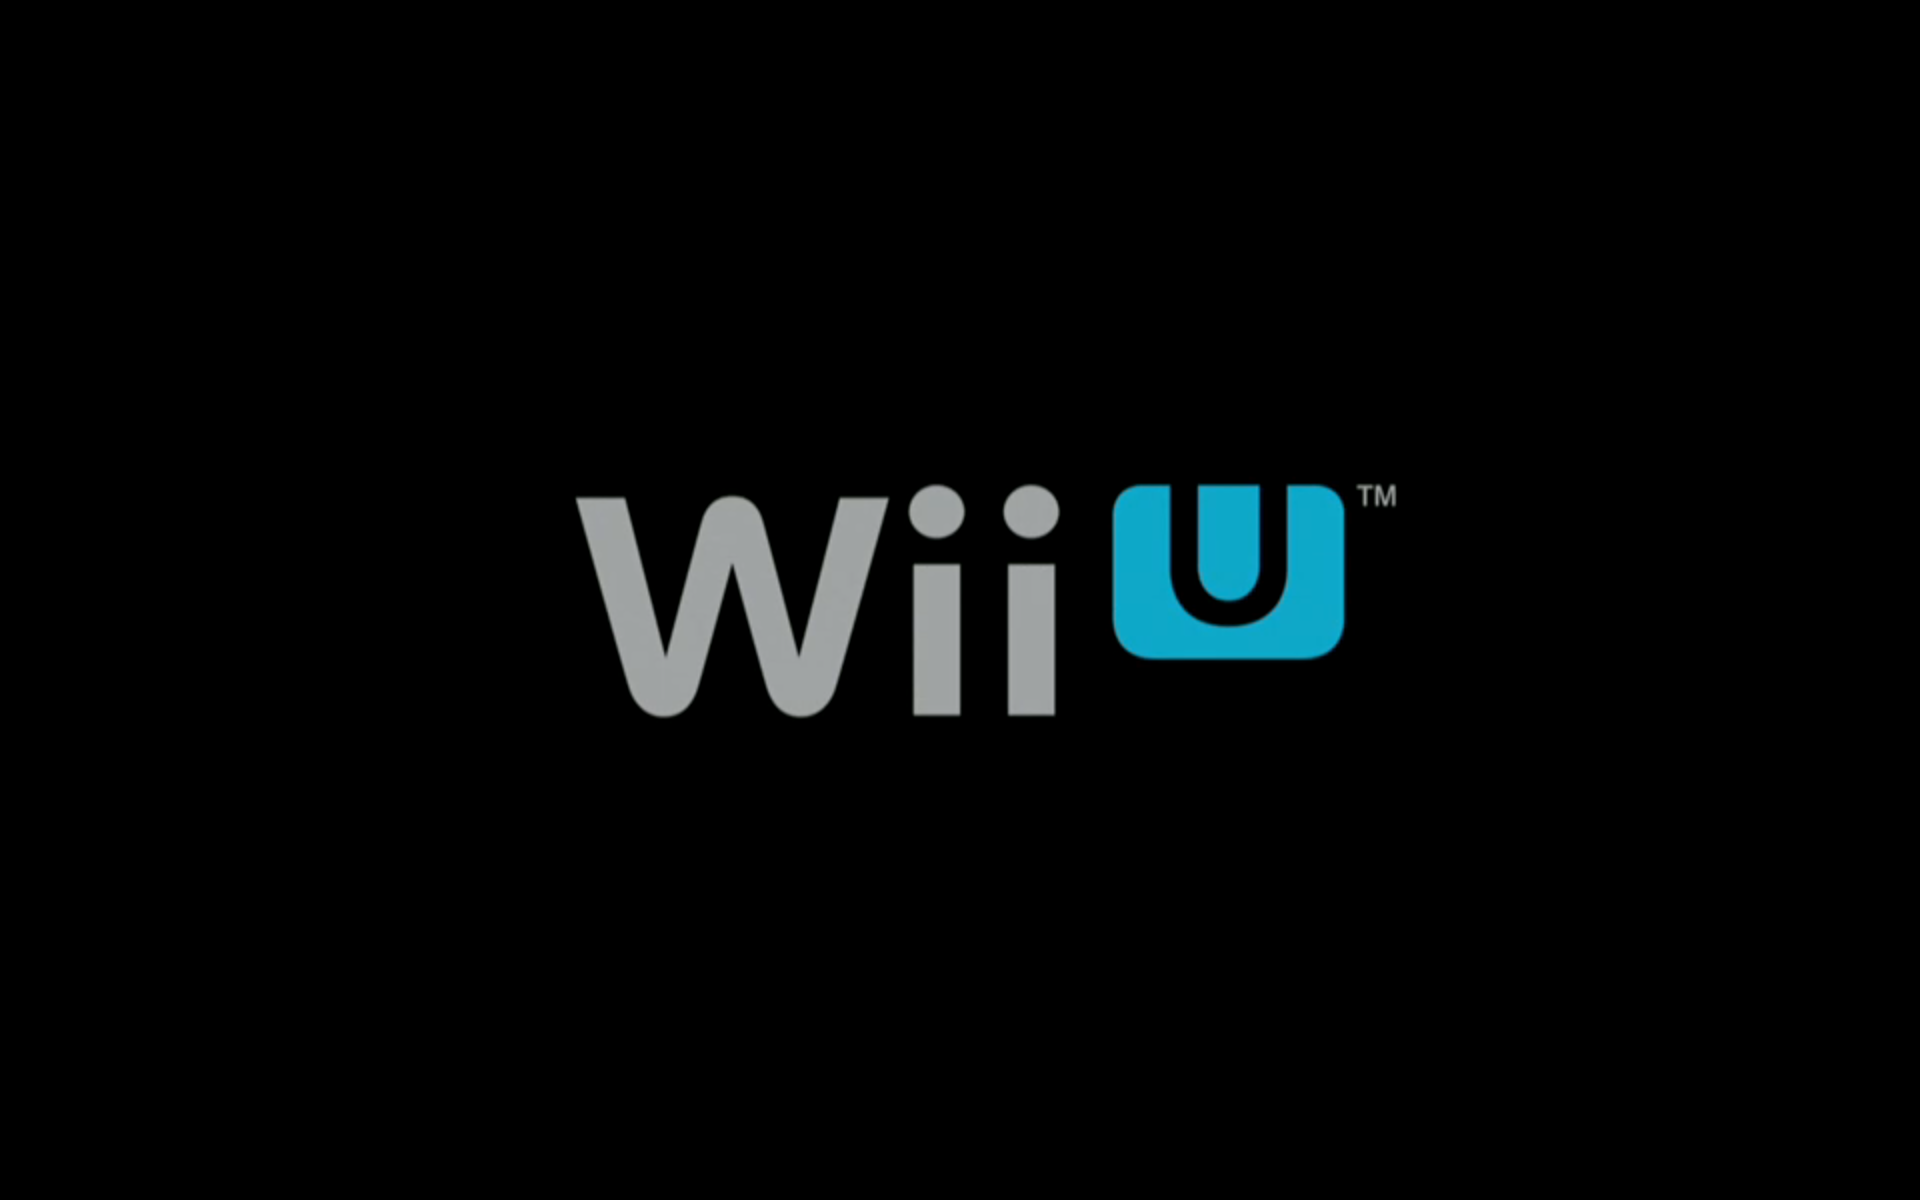 Nintendo Wii U Wallpapers - Wallpaper Cave